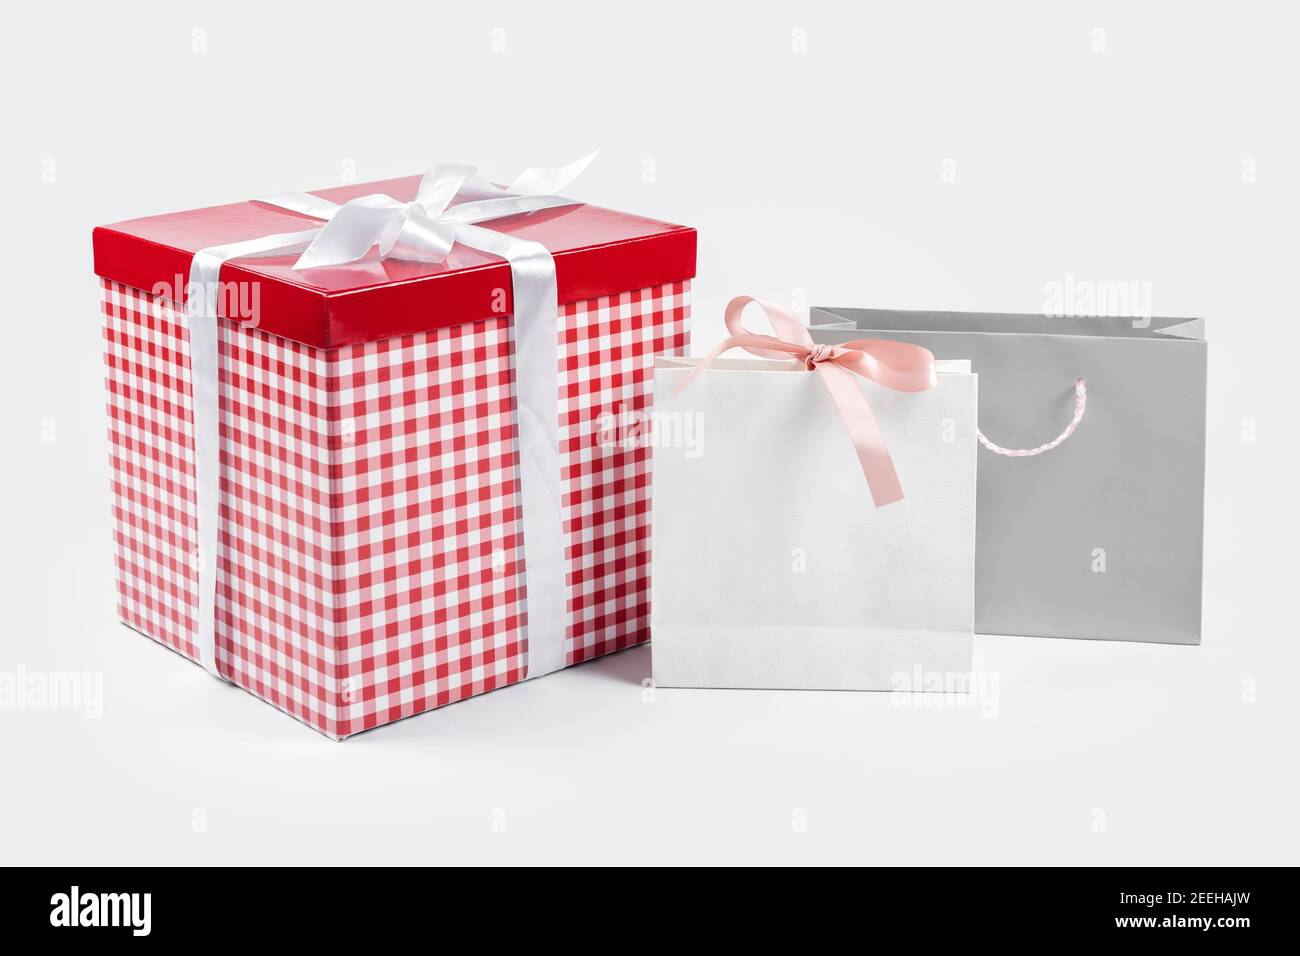 Cajas de regalo, sorpresa para las vacaciones. Concepto de regalo, compra y  venta. Caja de regalo roja con lazo de seda blanca en la parte superior y  bolsas de papel en la